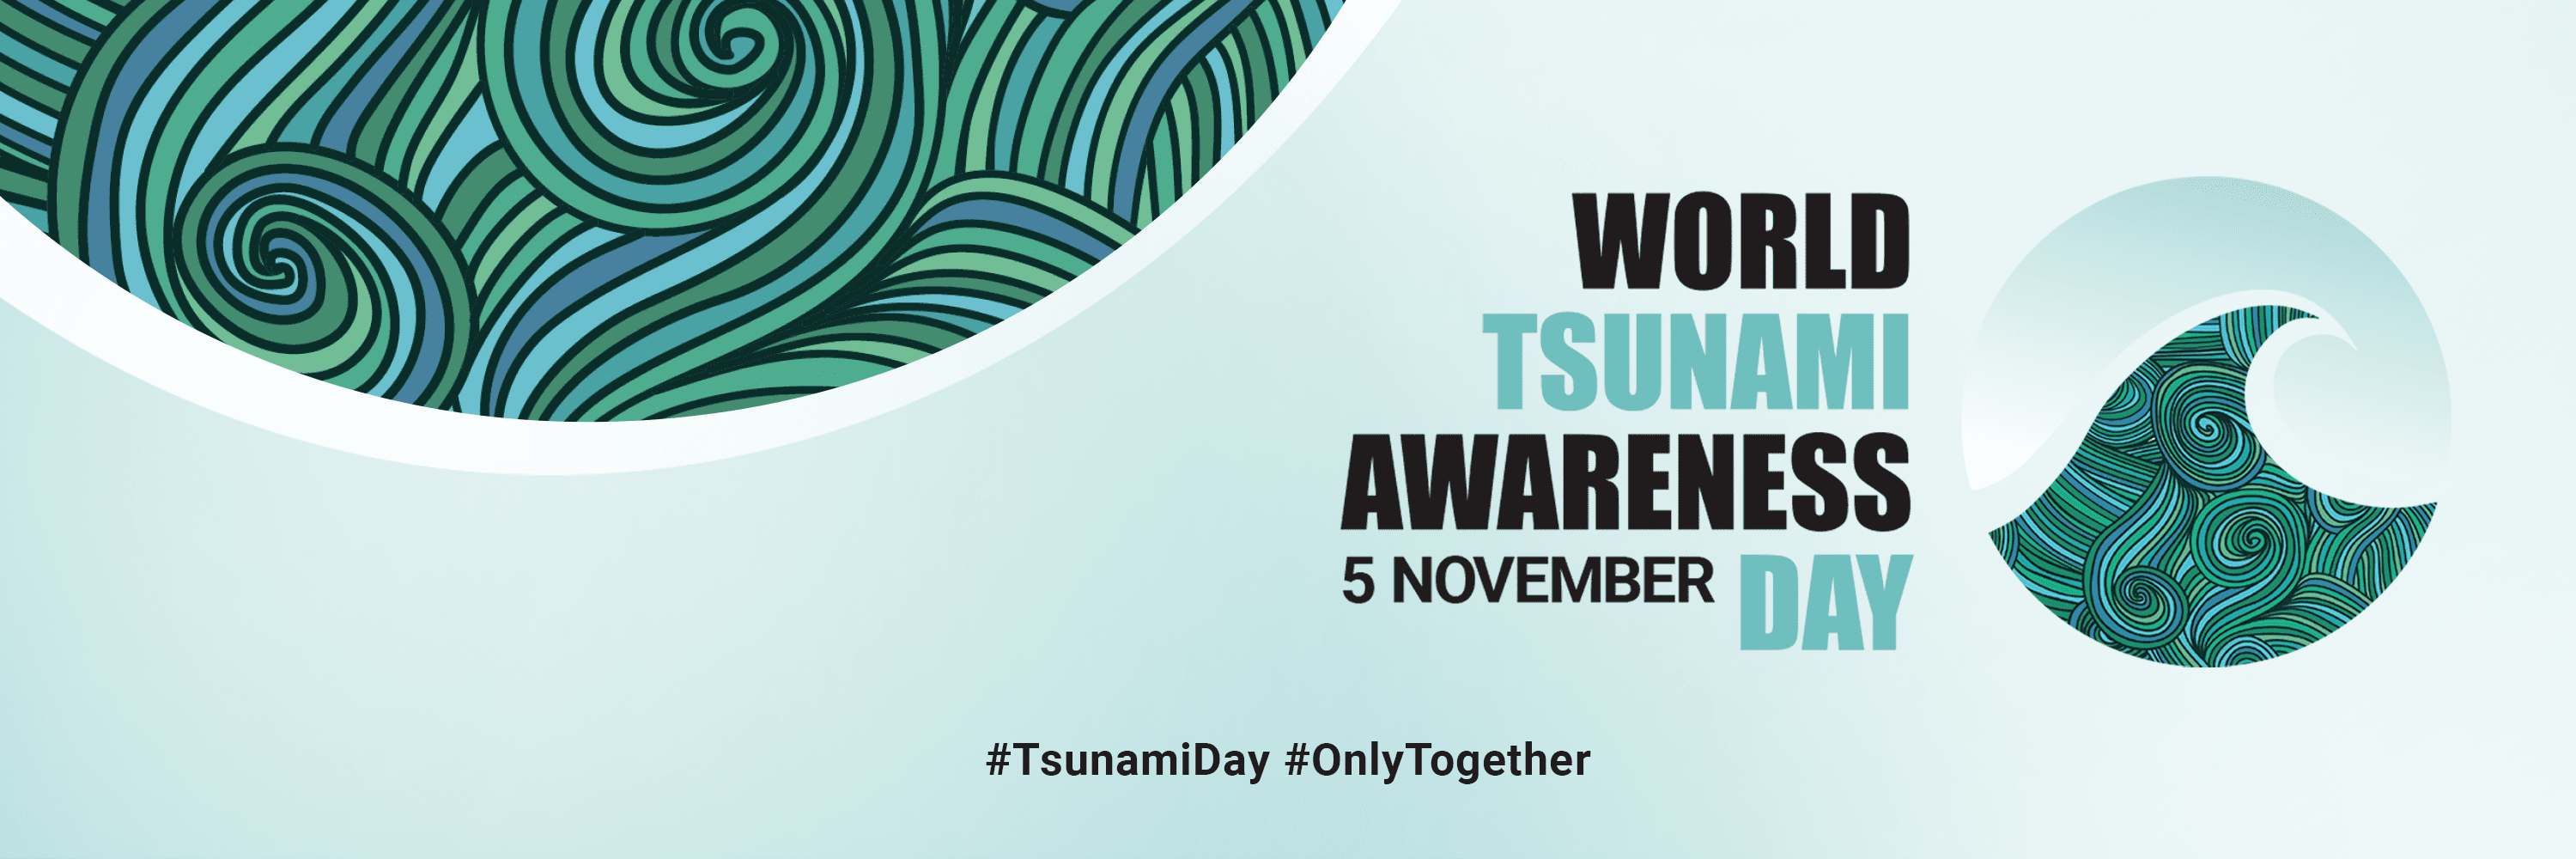 Tsunami Awareness poster